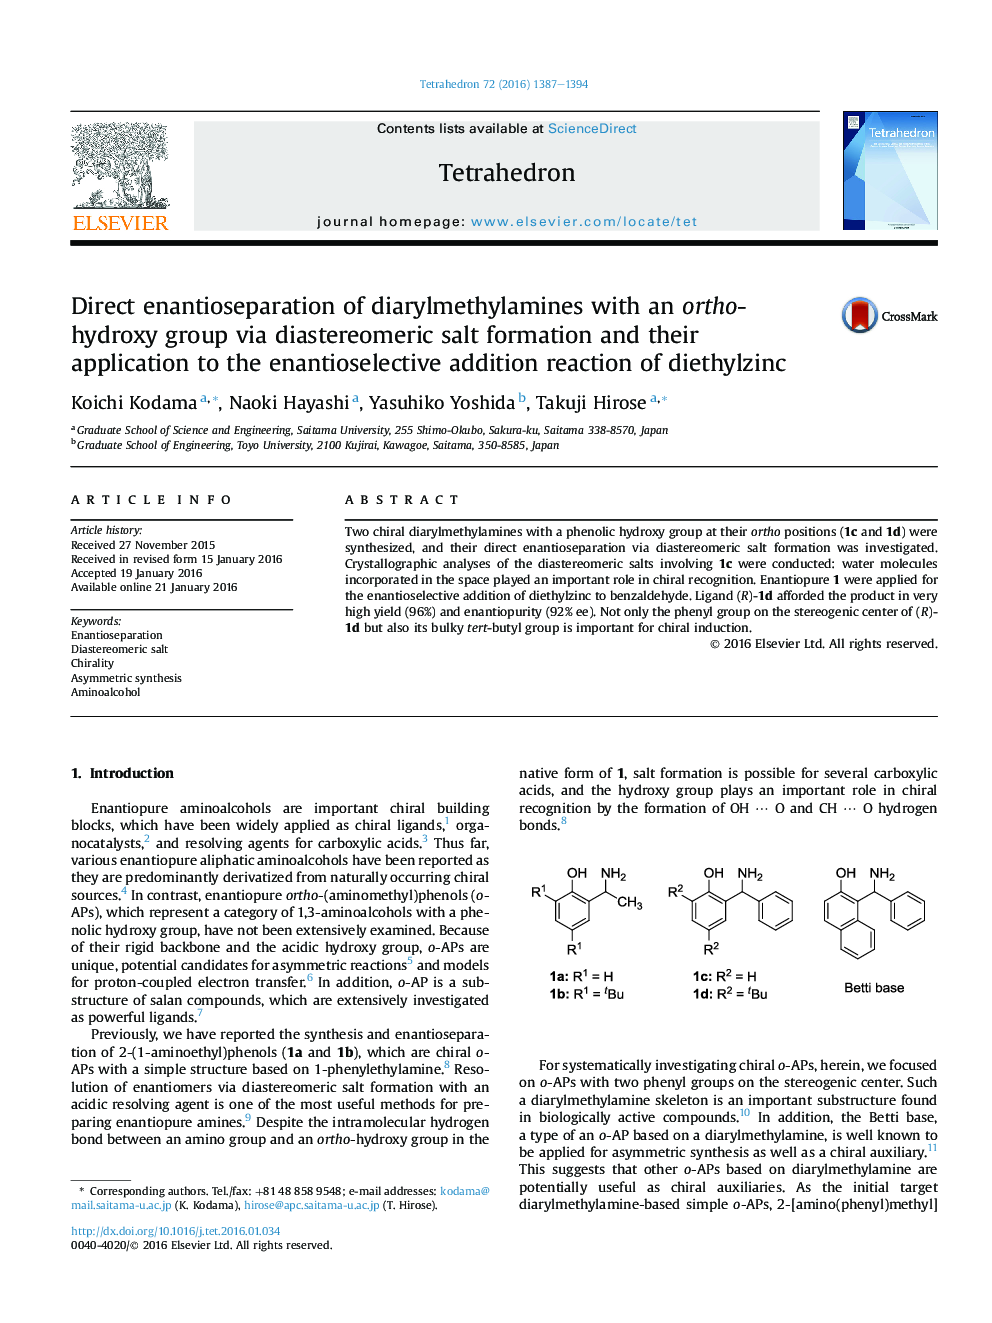 انانتی جدا سازی مستقیم دیاریل متیلامین ها با یک گروه هیدروکسی اورات از طریق تشکیل نمک دیاستریمور و کاربرد آنها در واکنش اضافی آنتی اکسیدان زا 